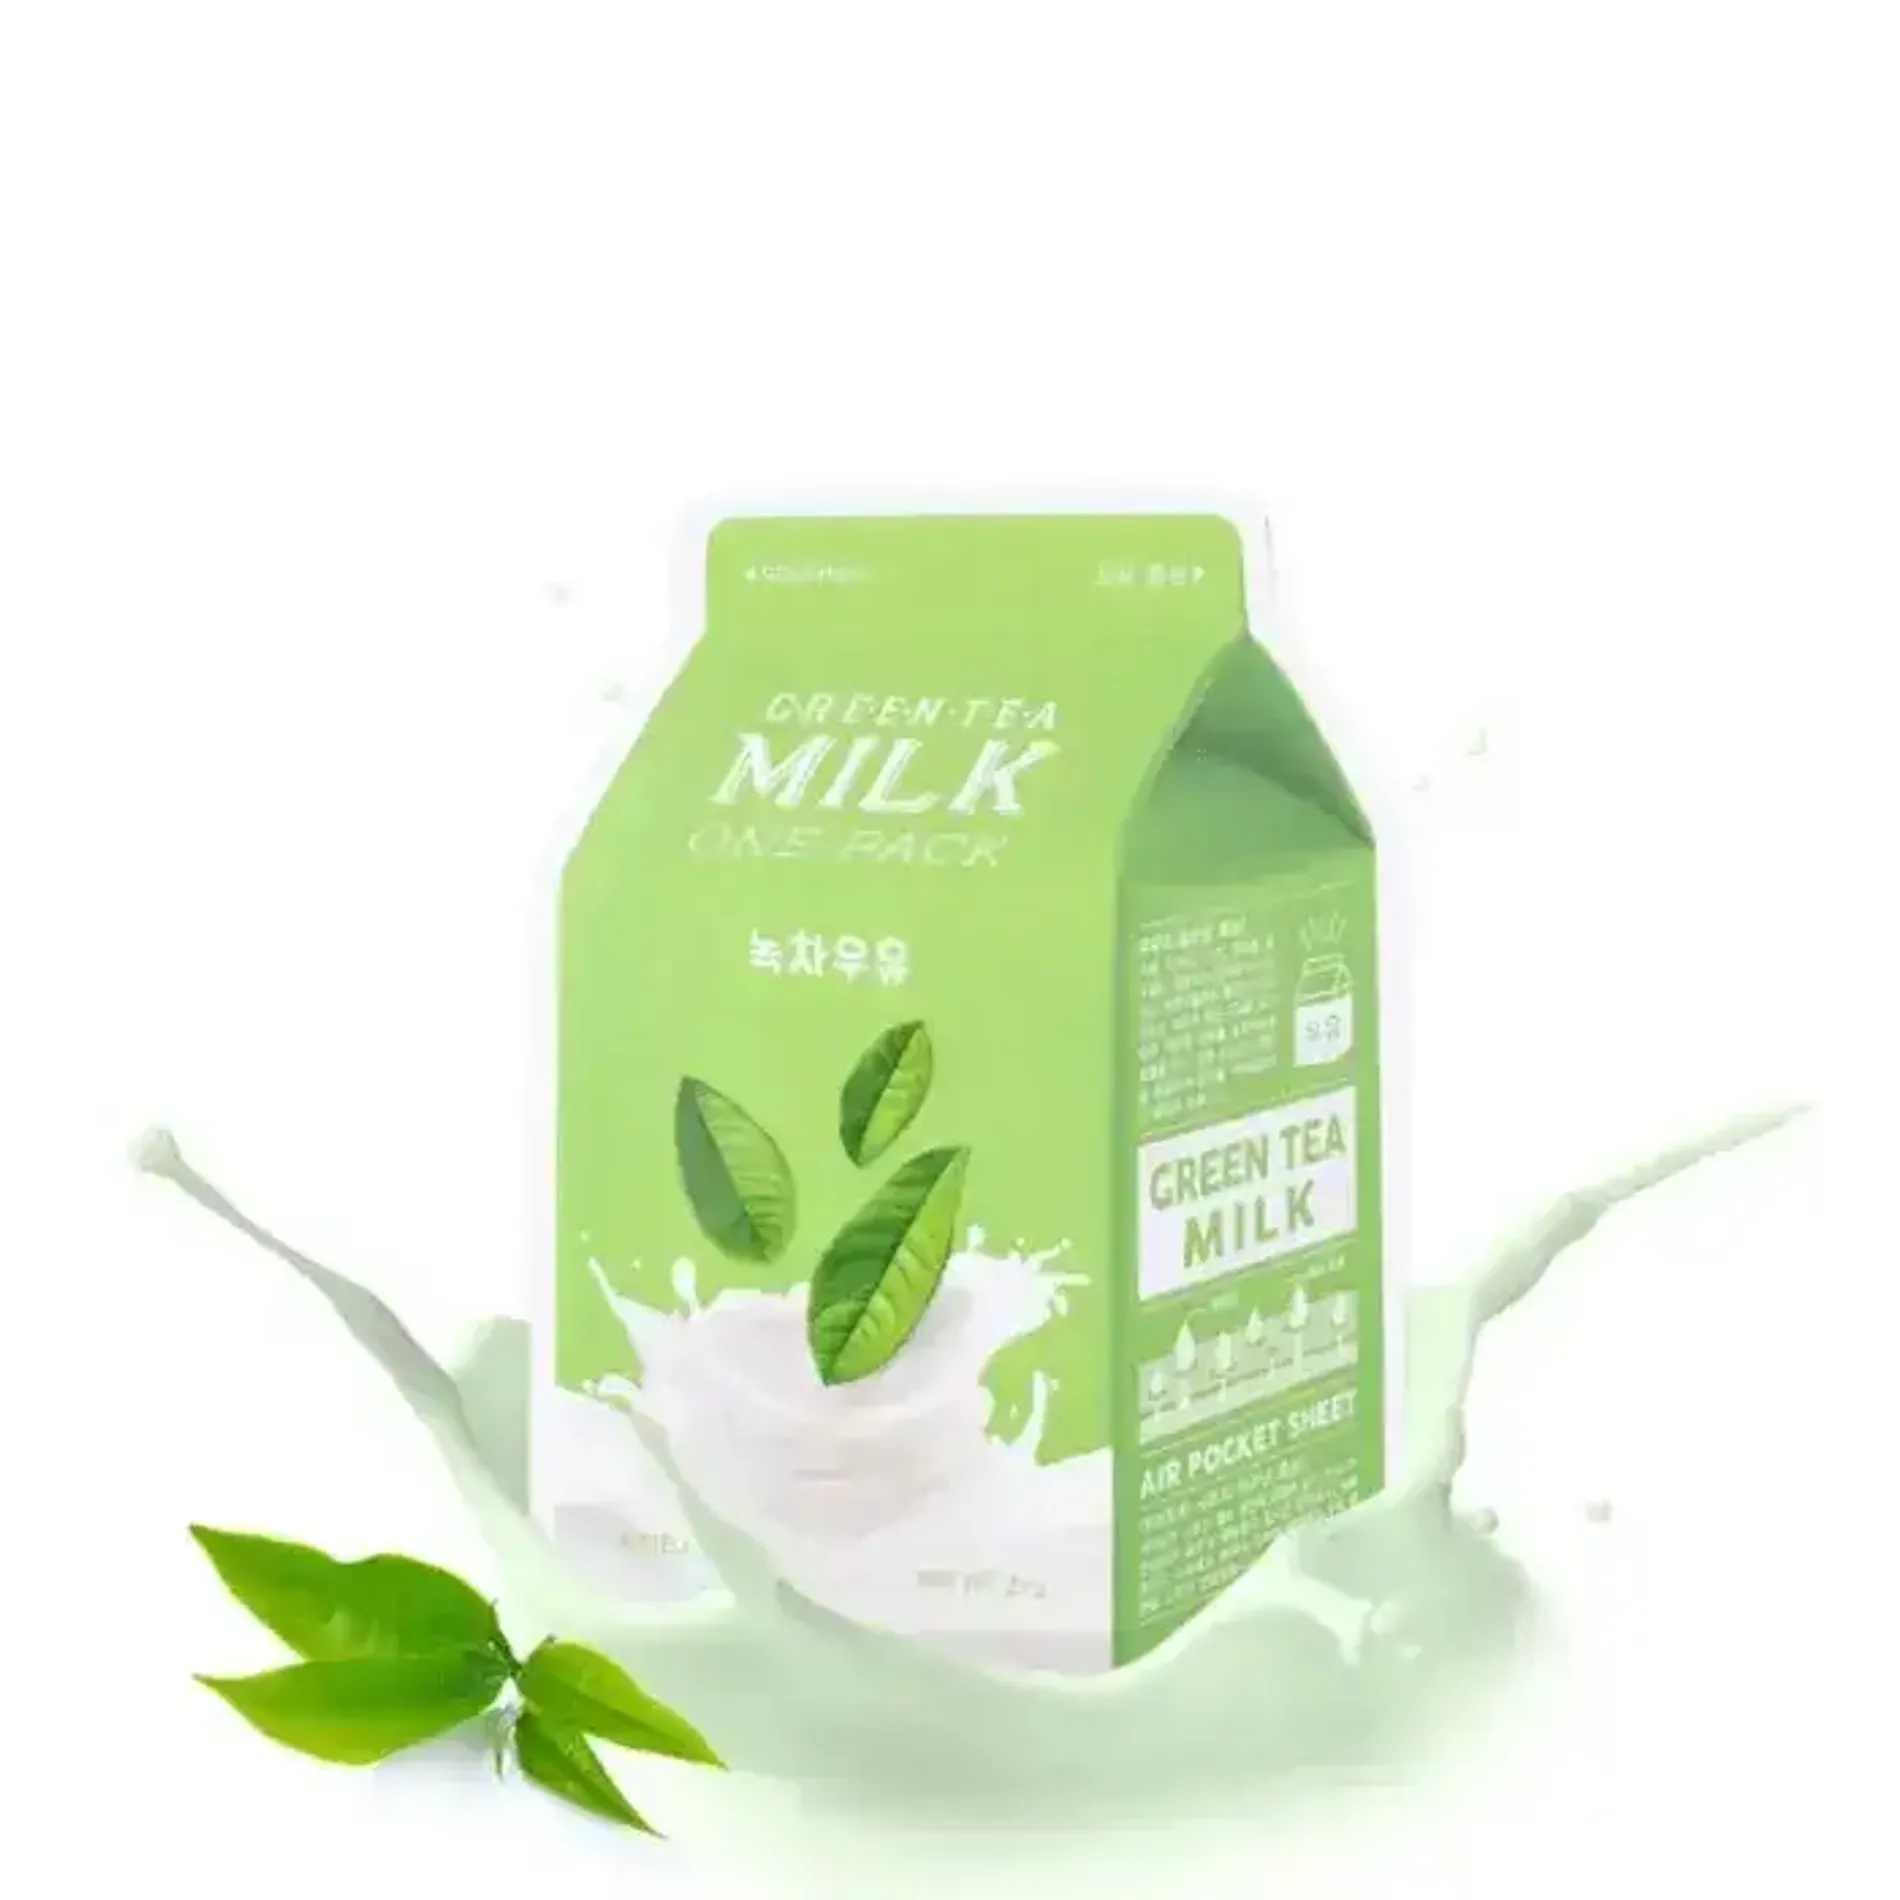 mat-na-lam-diu-da-a-pieu-green-tea-milk-one-pack-1